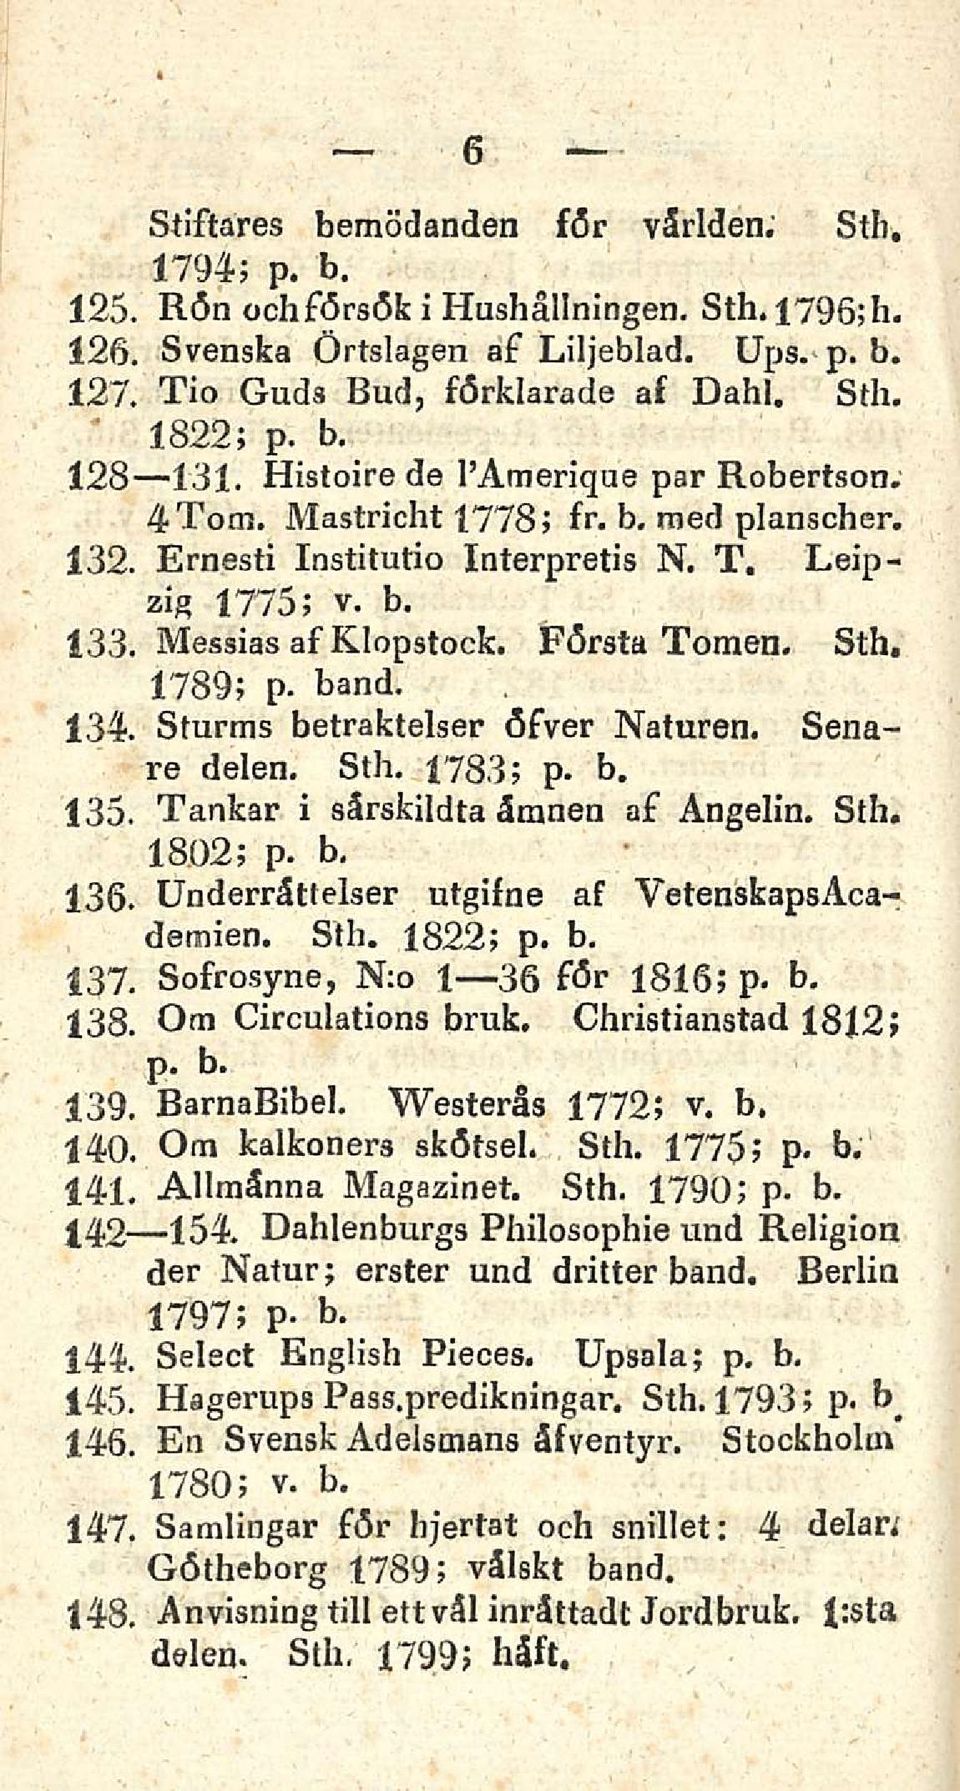 Sth, 1789; p. band. 134. Sturms betraktelser öfver Naturen. Senare delen. Sth, 1783; p. b. 135. Tankar i särsfcildta äranen af Angelin. Sth. 1802; p. b. 136.